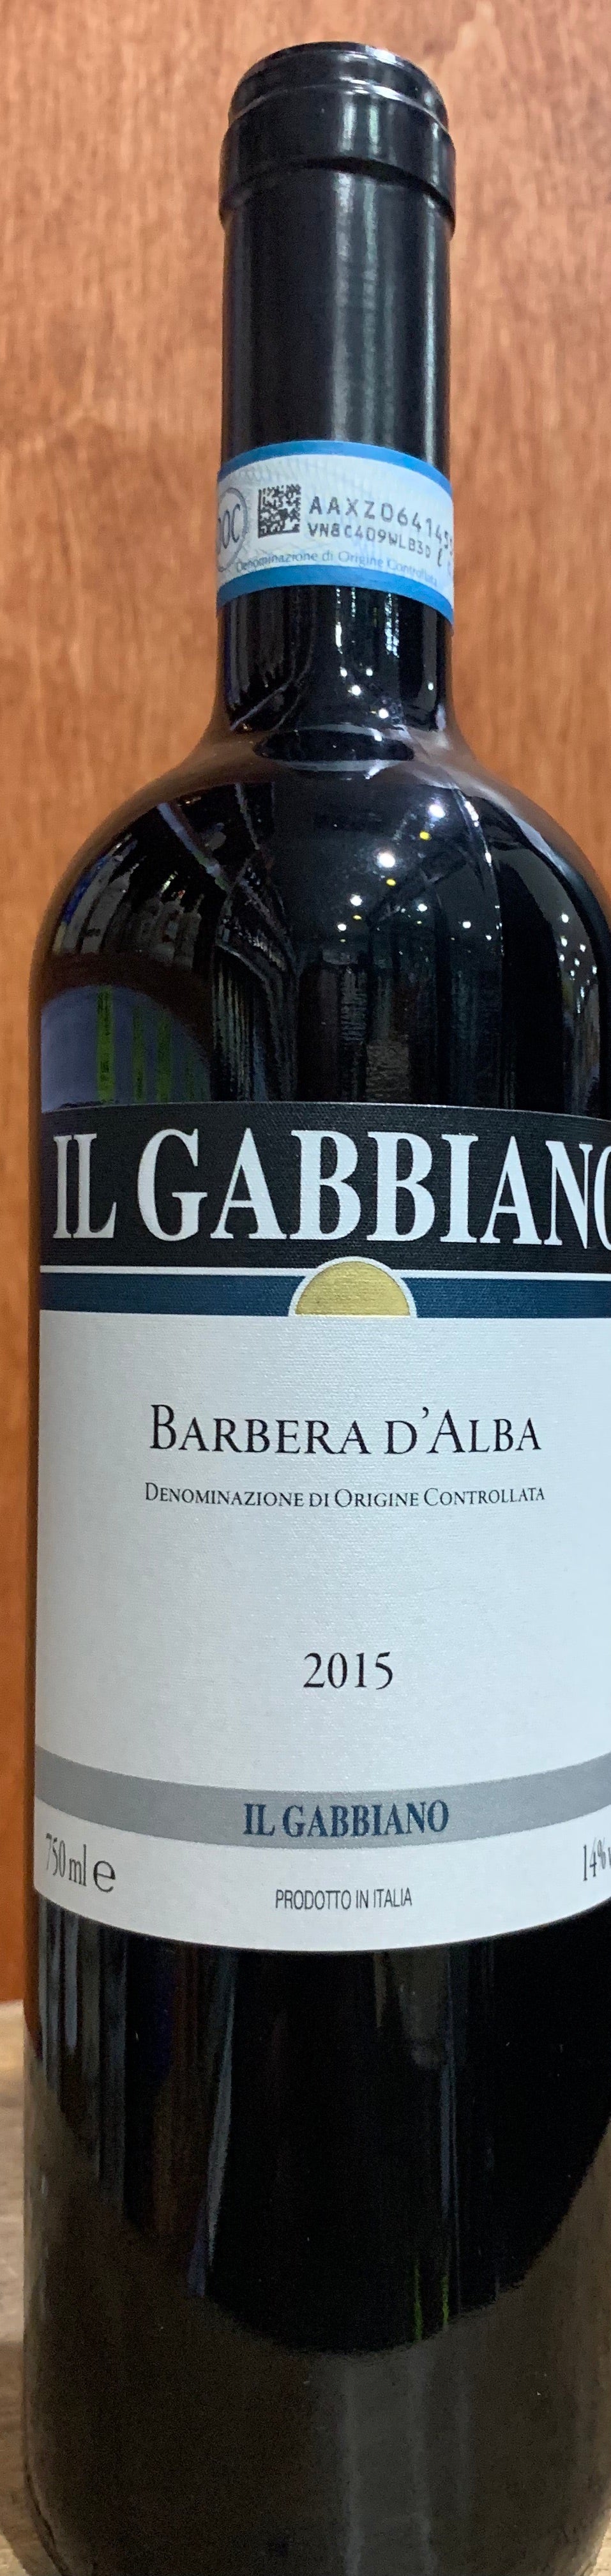 IL GABBIANO BARBERA D'ALBA 2018 - Bk Wine Depot Corp